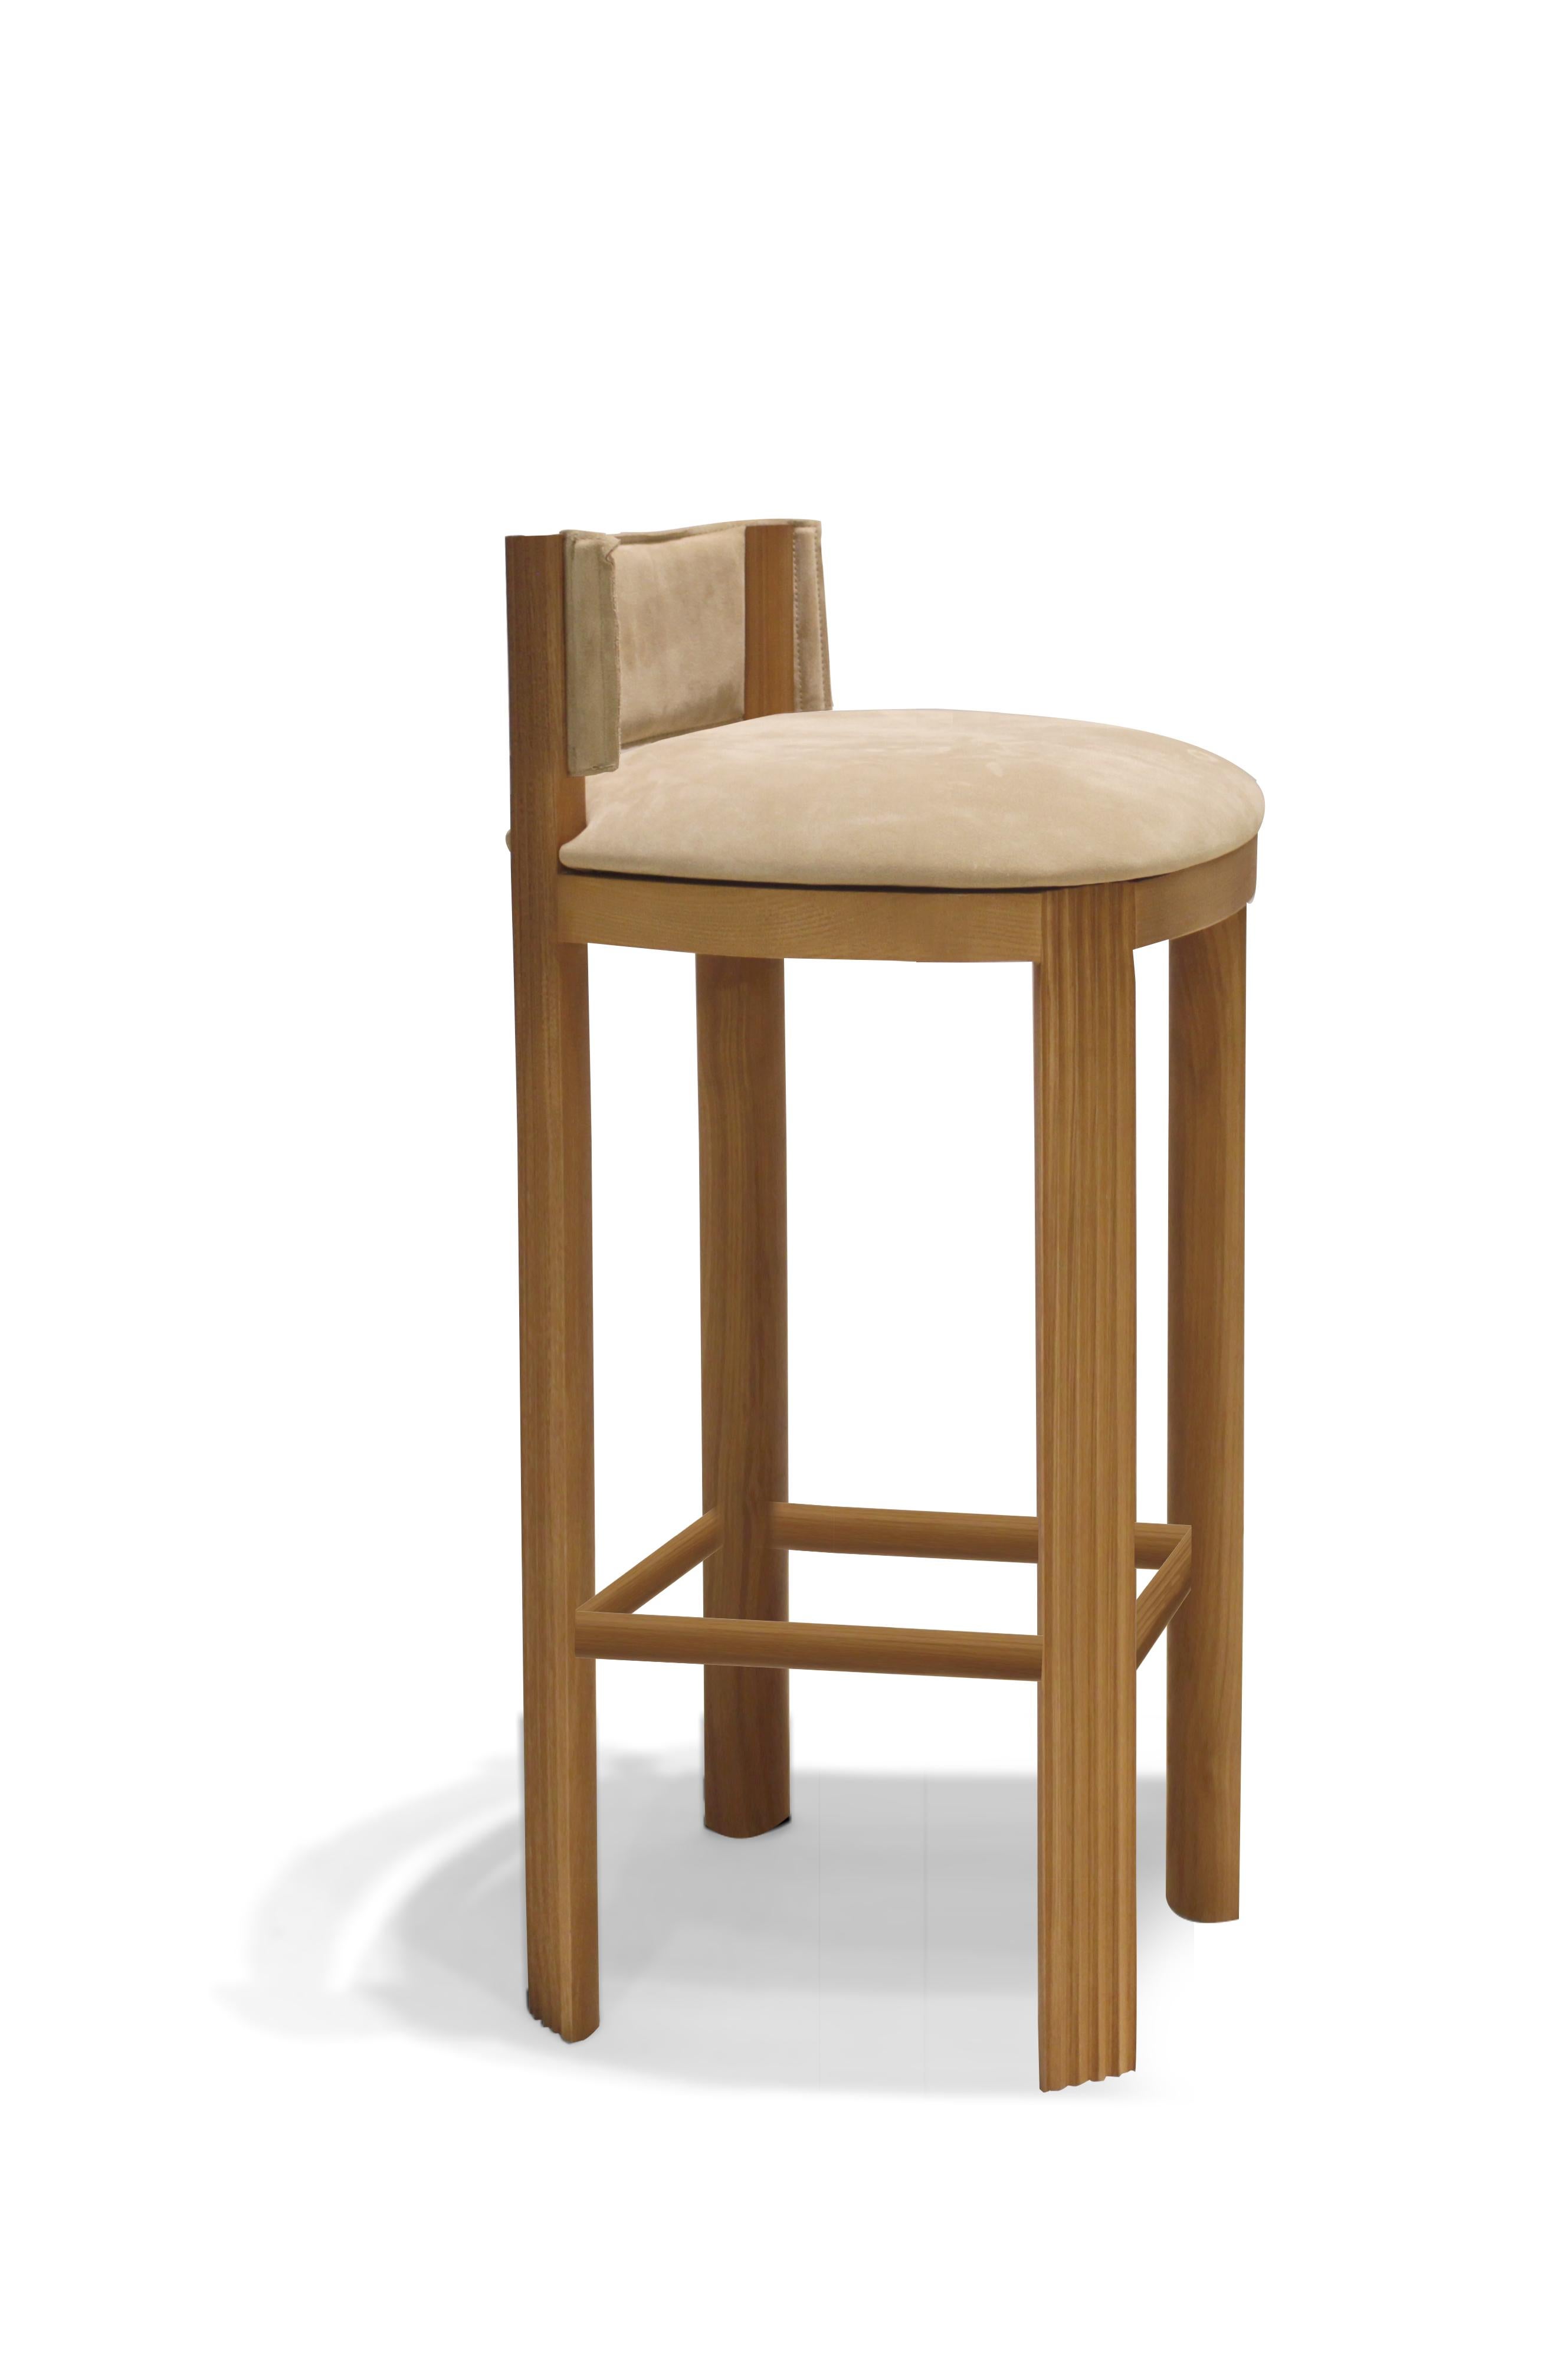 Portuguese Unique Oak Bar Chair by Collector